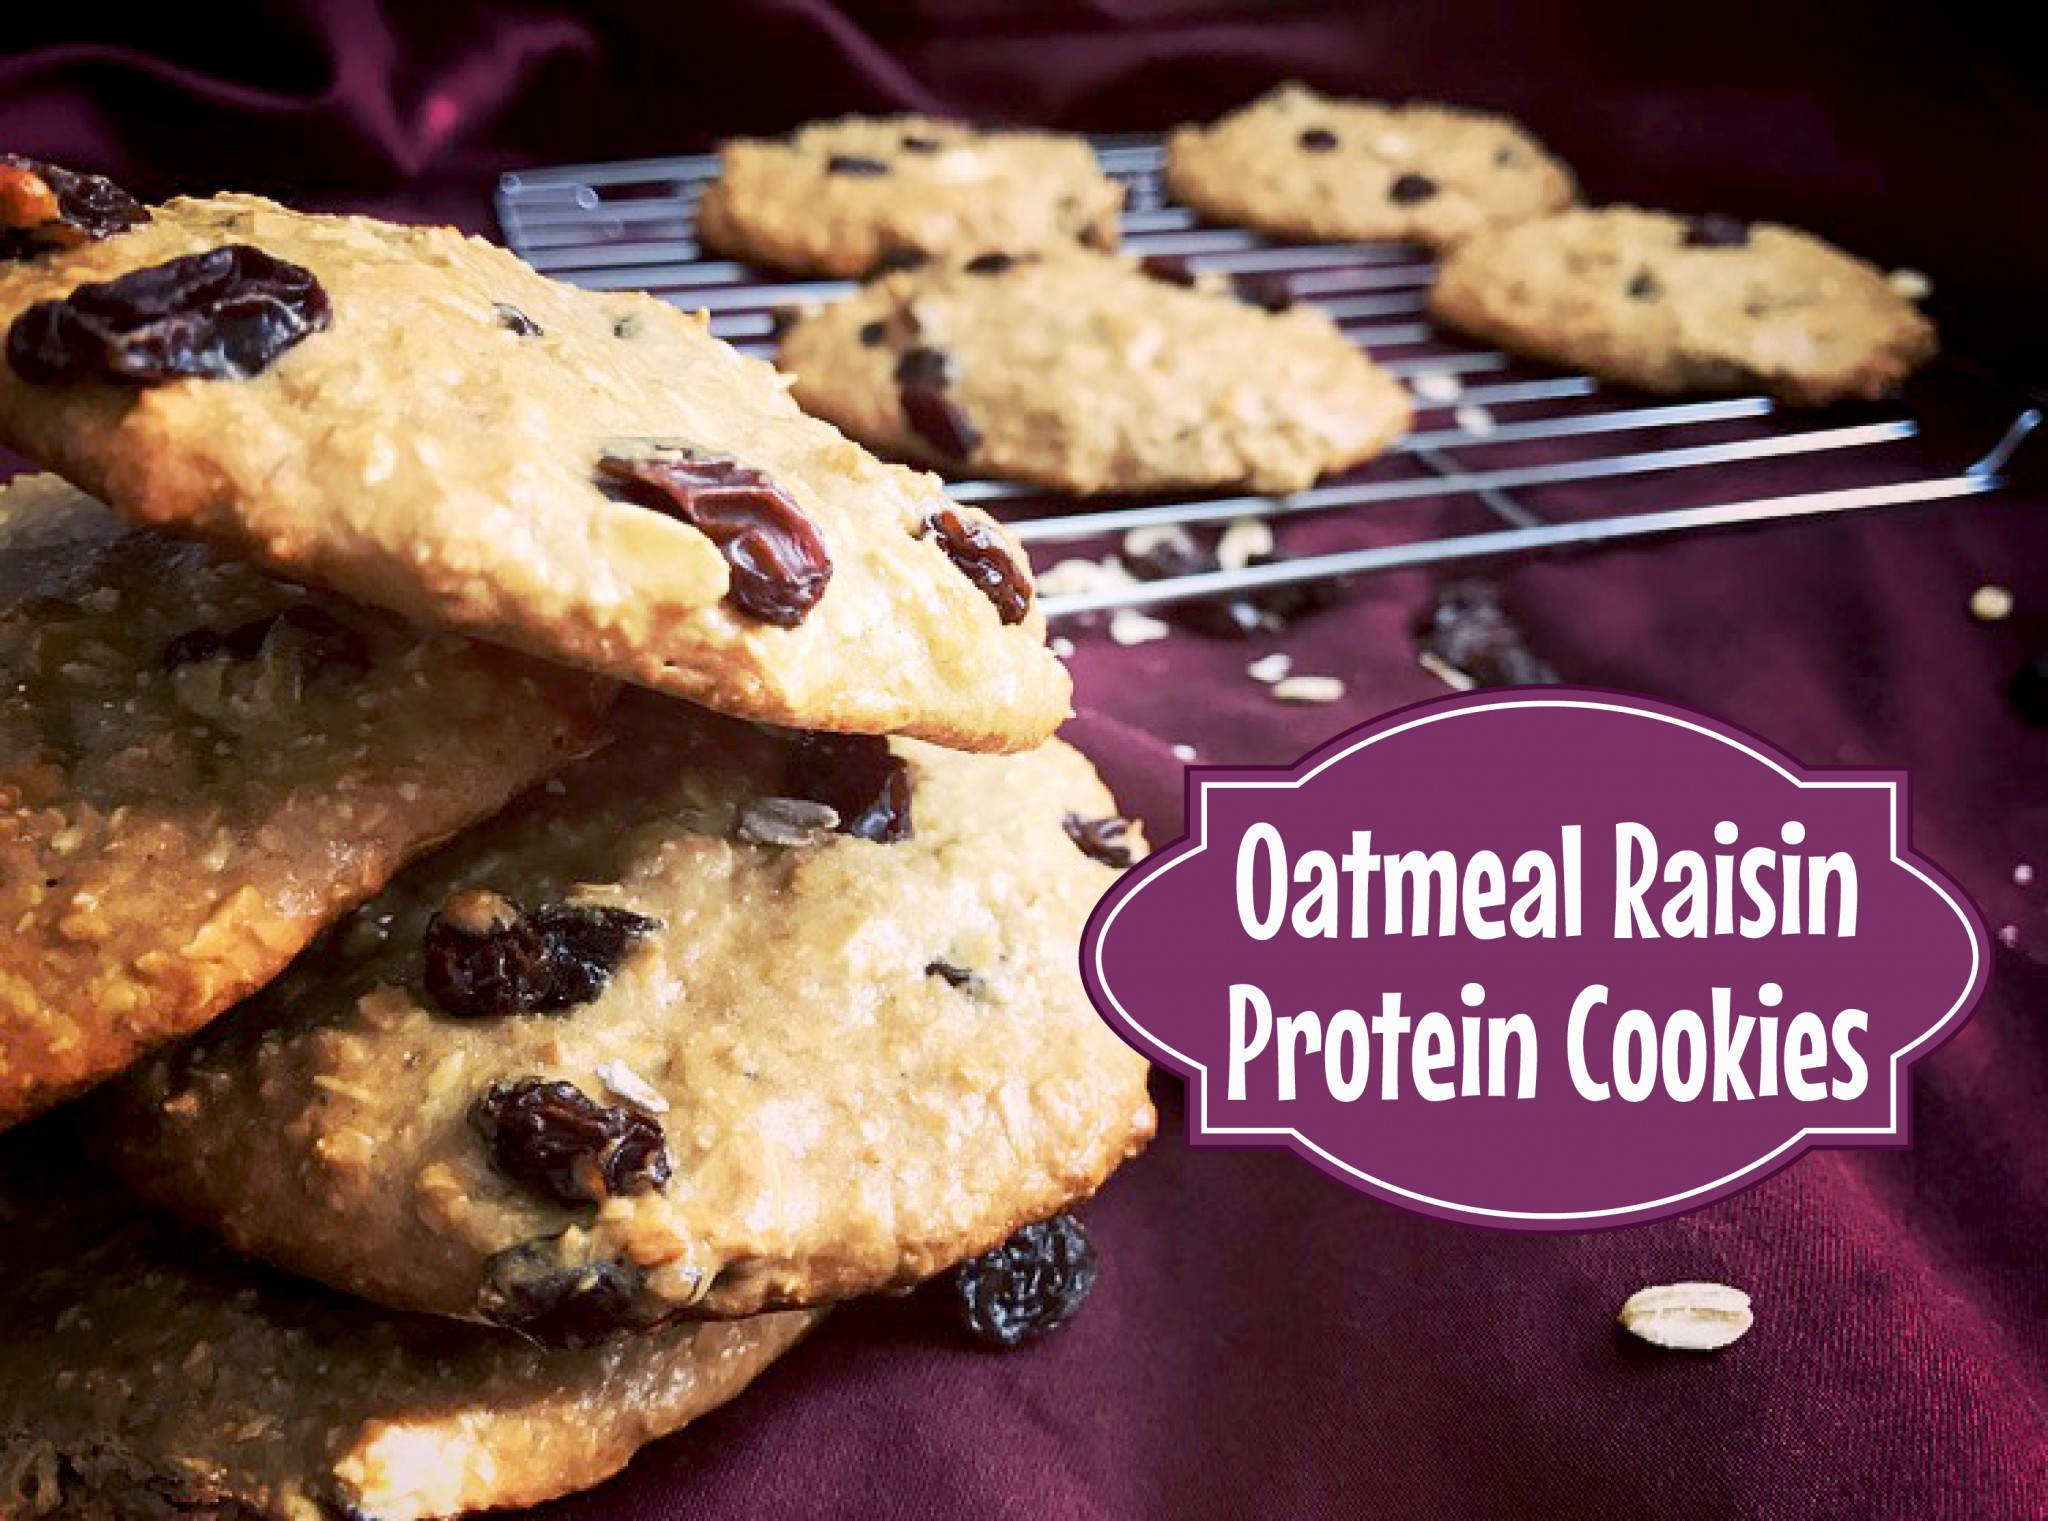 Oatmeal Raisin Protein Cookies